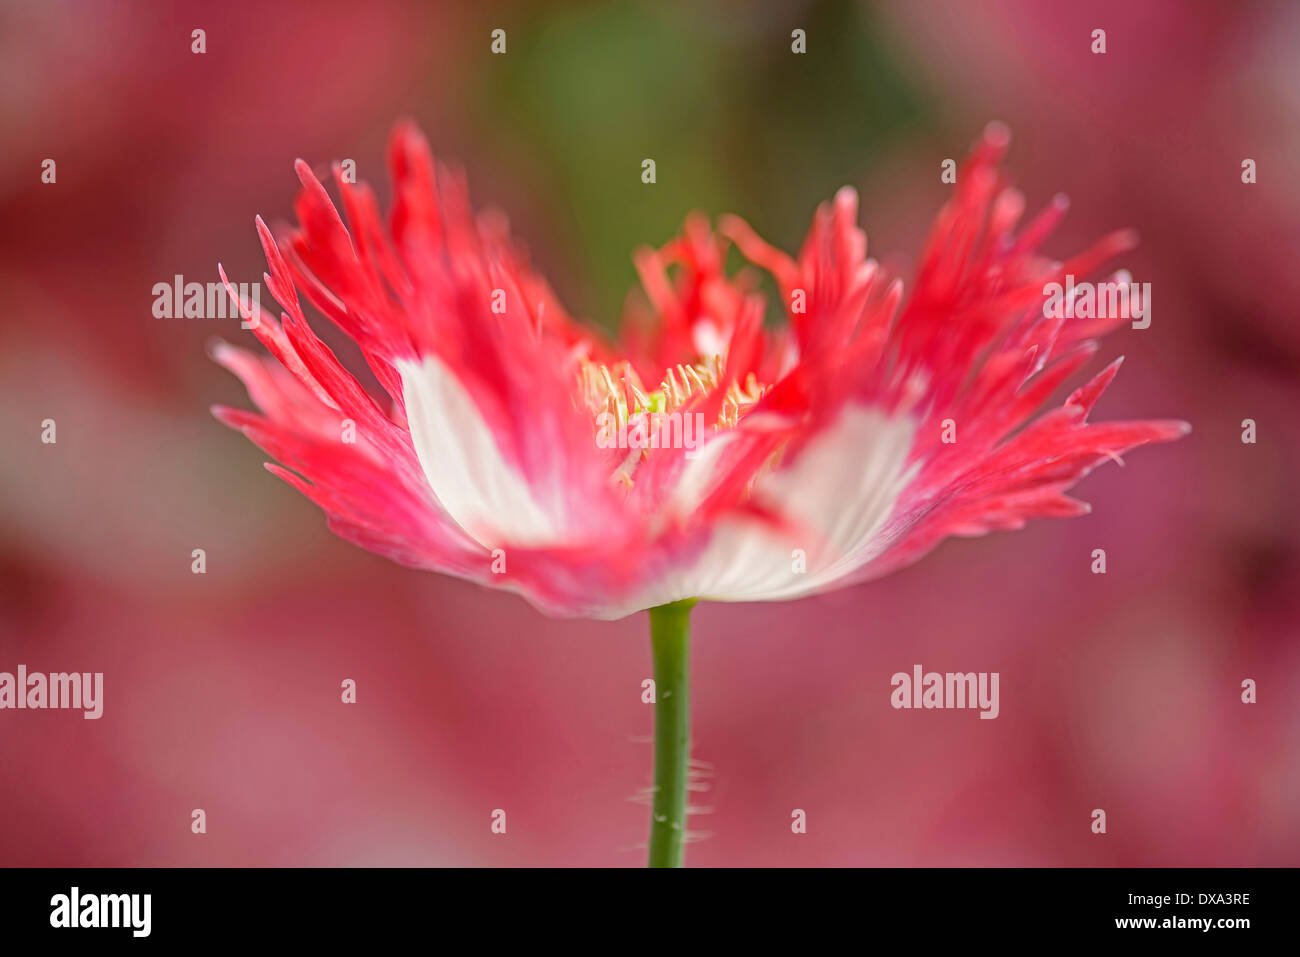 Papavero, Papaver somniferum "danish bandiera", rosso e bianco di fiori colorati che illustra frange petali e stami. Foto Stock